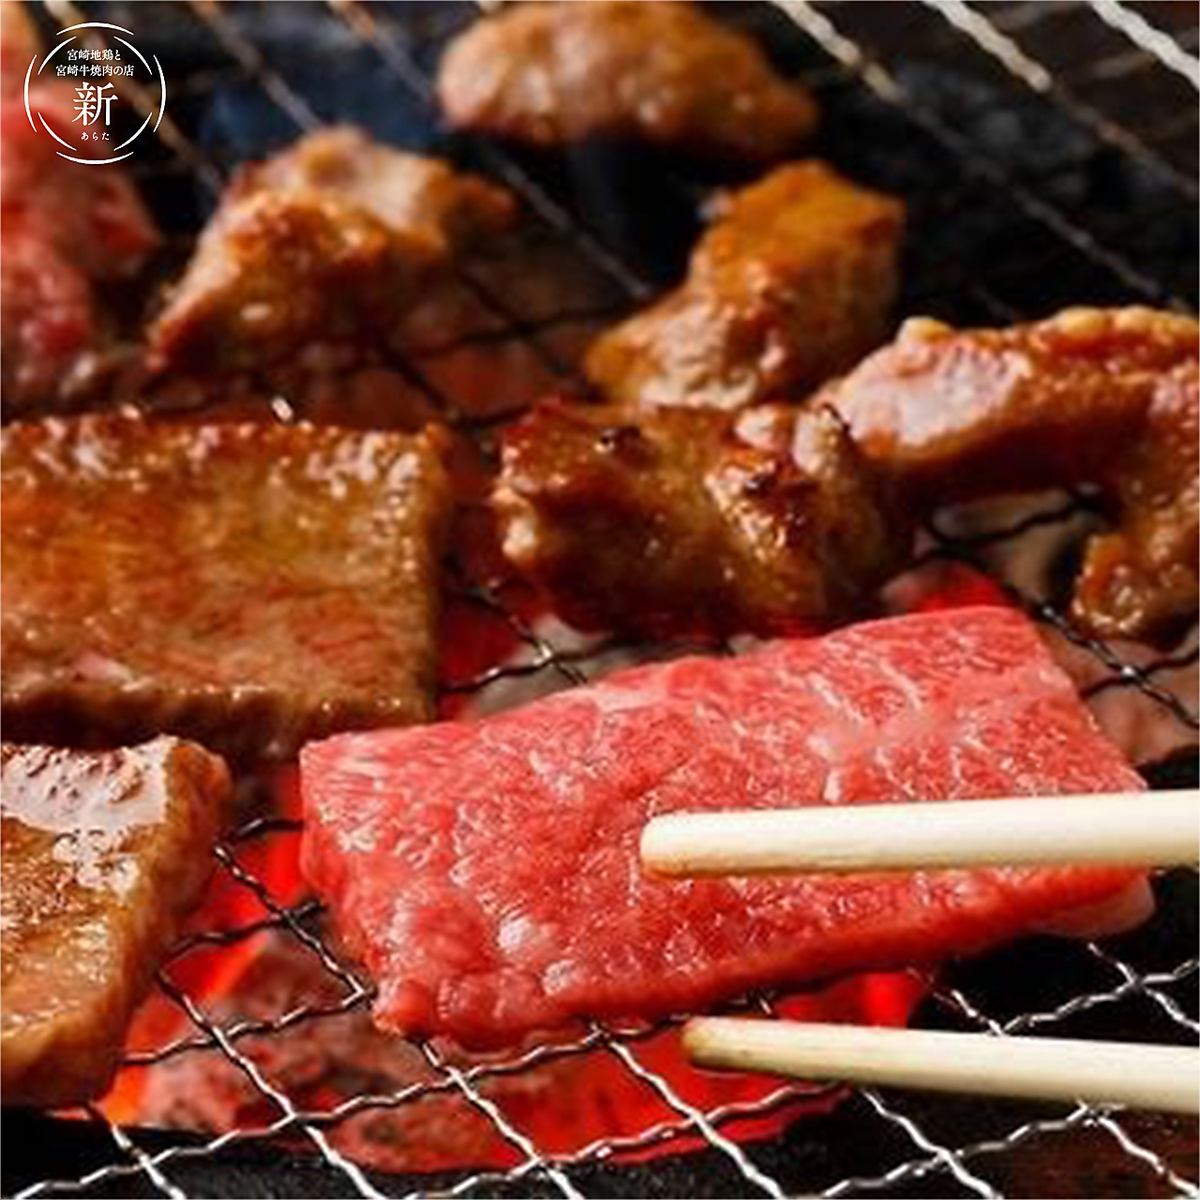 전석 개인실! 미야자키 쇠고기 · 가고시마 구로규 등 브랜드 소의 먹고 비교할 수있는 세련되고 호화로운 야키니쿠 점